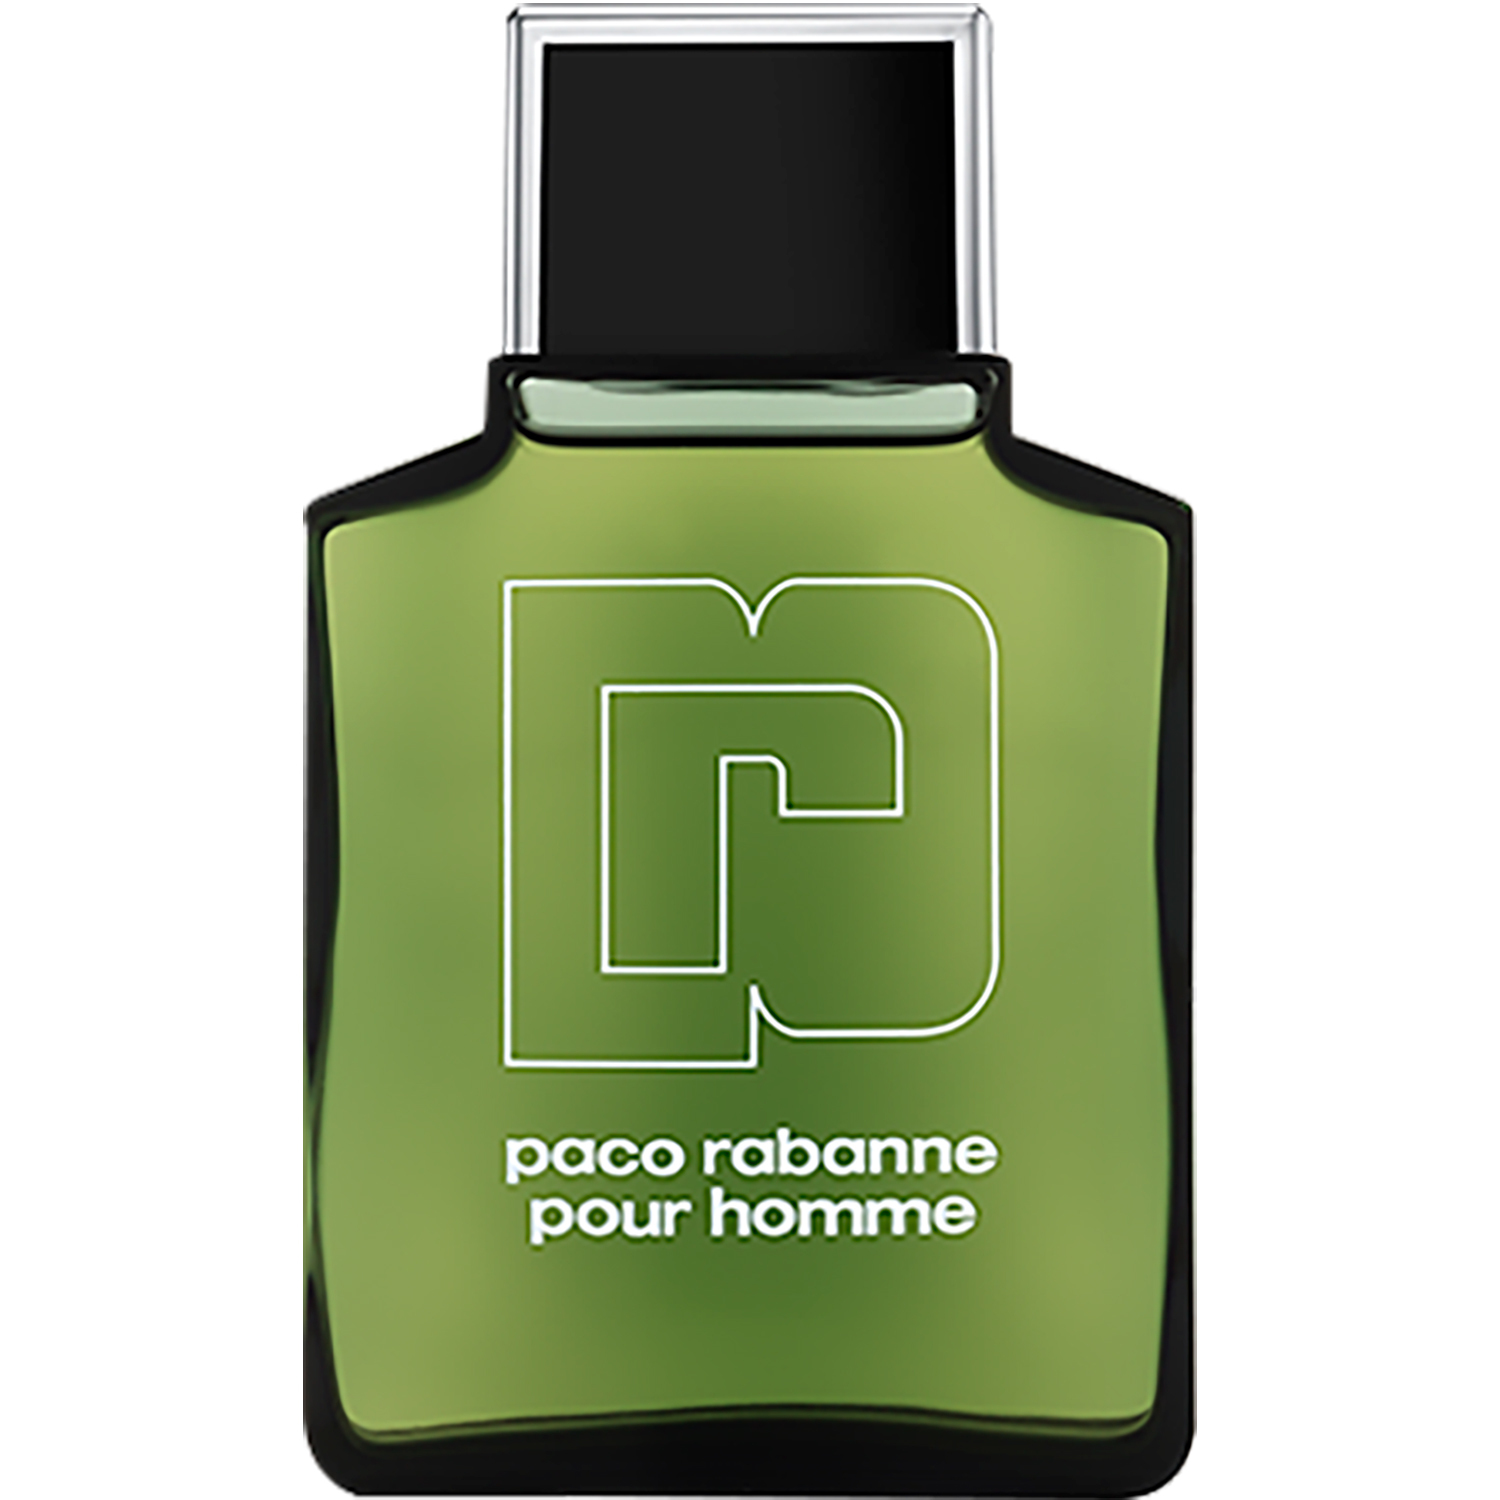 Paco Rabanne Pour homme eau de toilette / 200 ml / heren